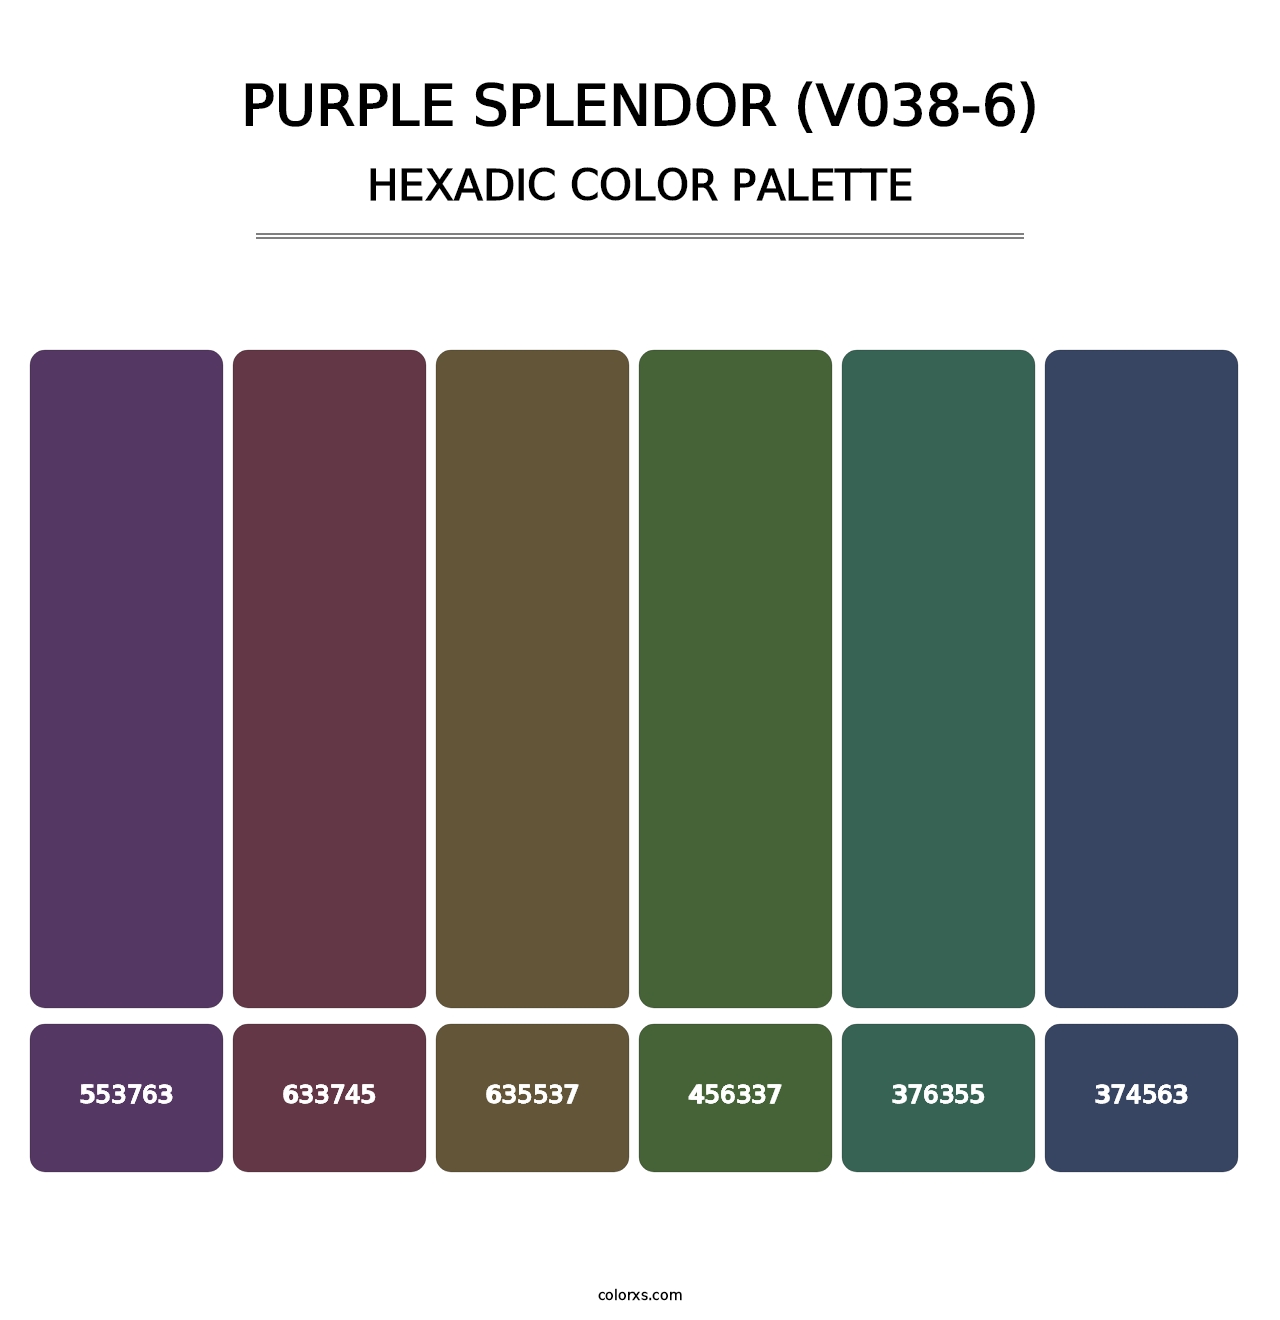 Purple Splendor (V038-6) - Hexadic Color Palette